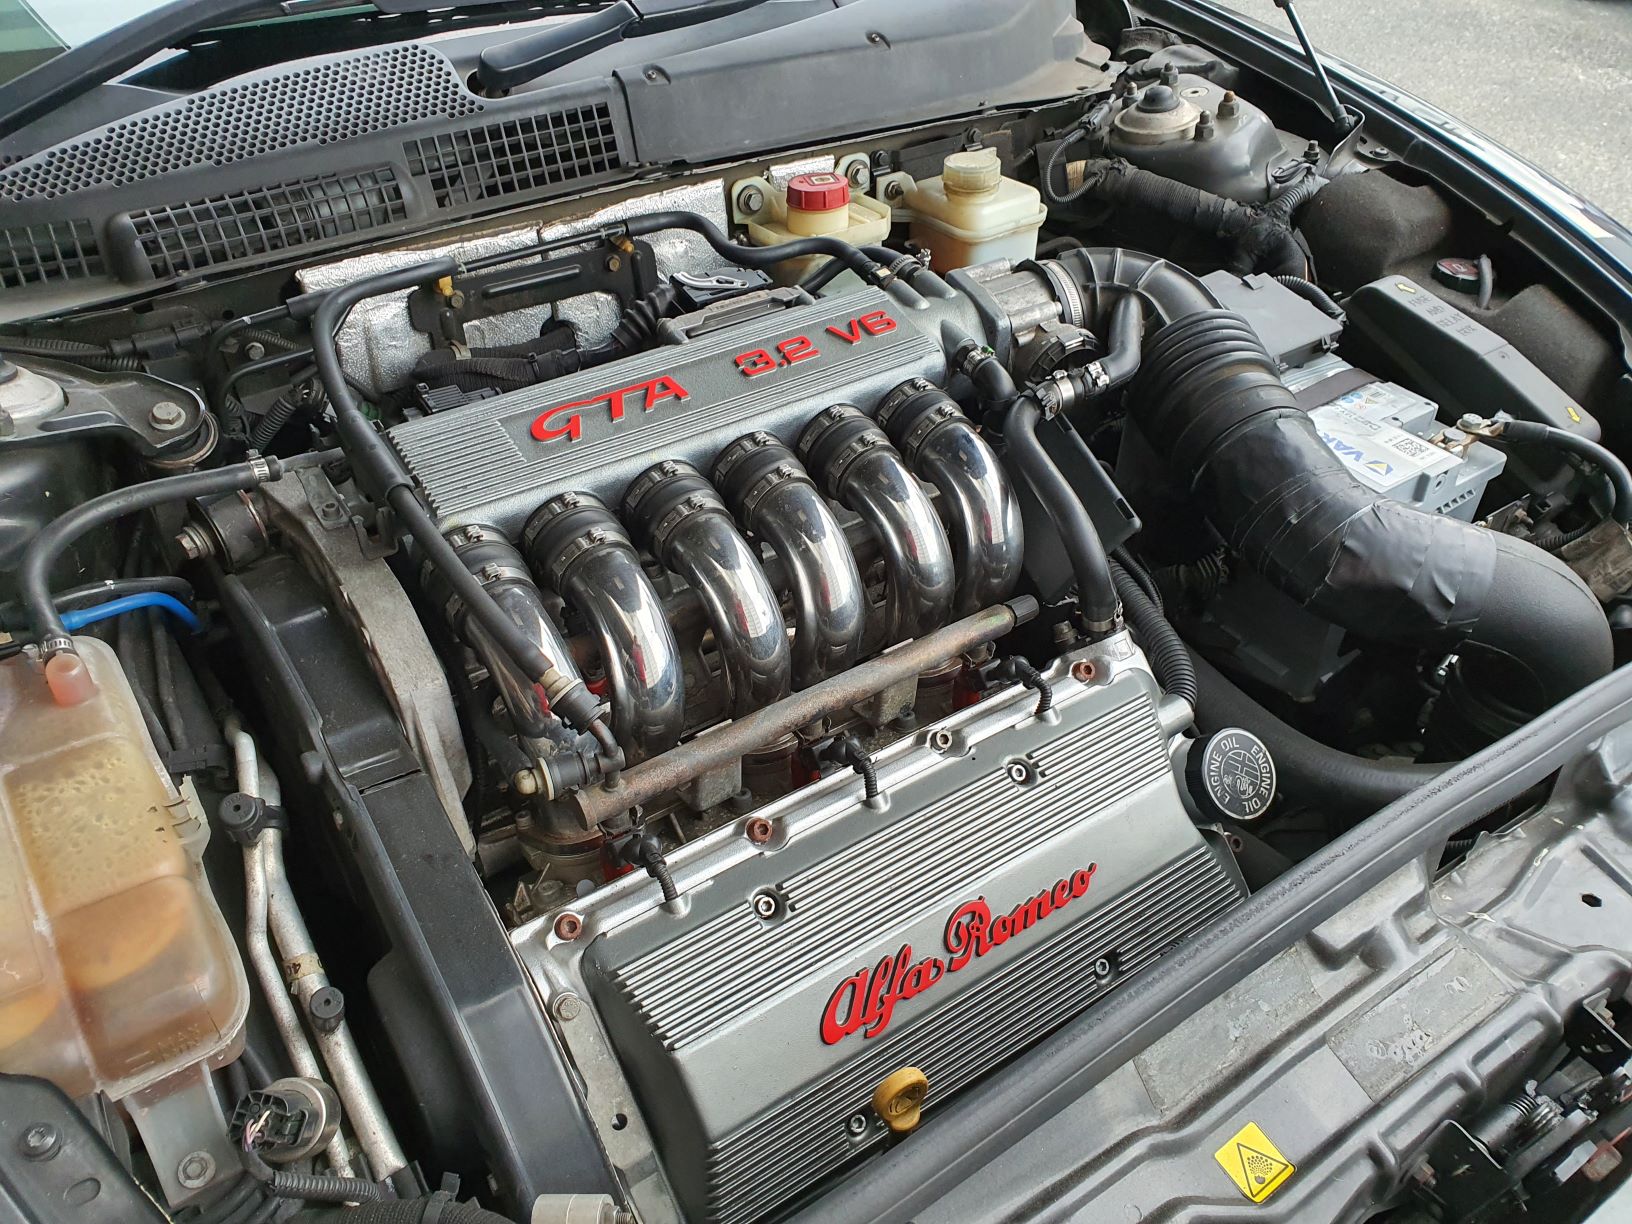 The Busso 3.2 litre V6 engine